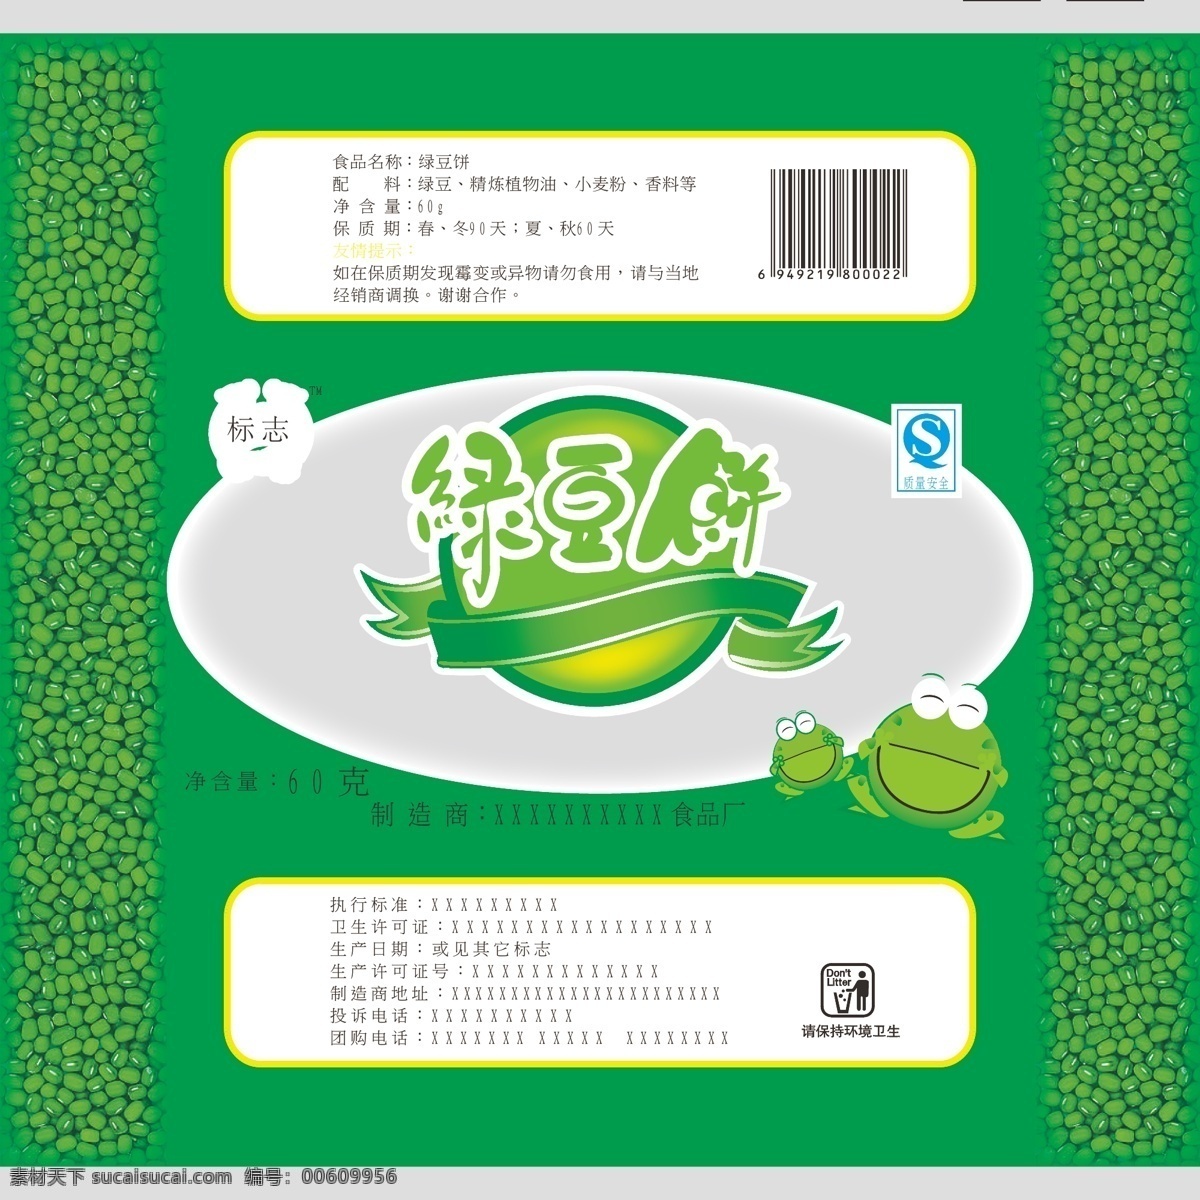 绿豆饼 包装 绿豆 豆子 饼 食品 休闲食品 绿色 绿豆蛙 青蛙 丝带 食品包装 软包装 包装设计 矢量